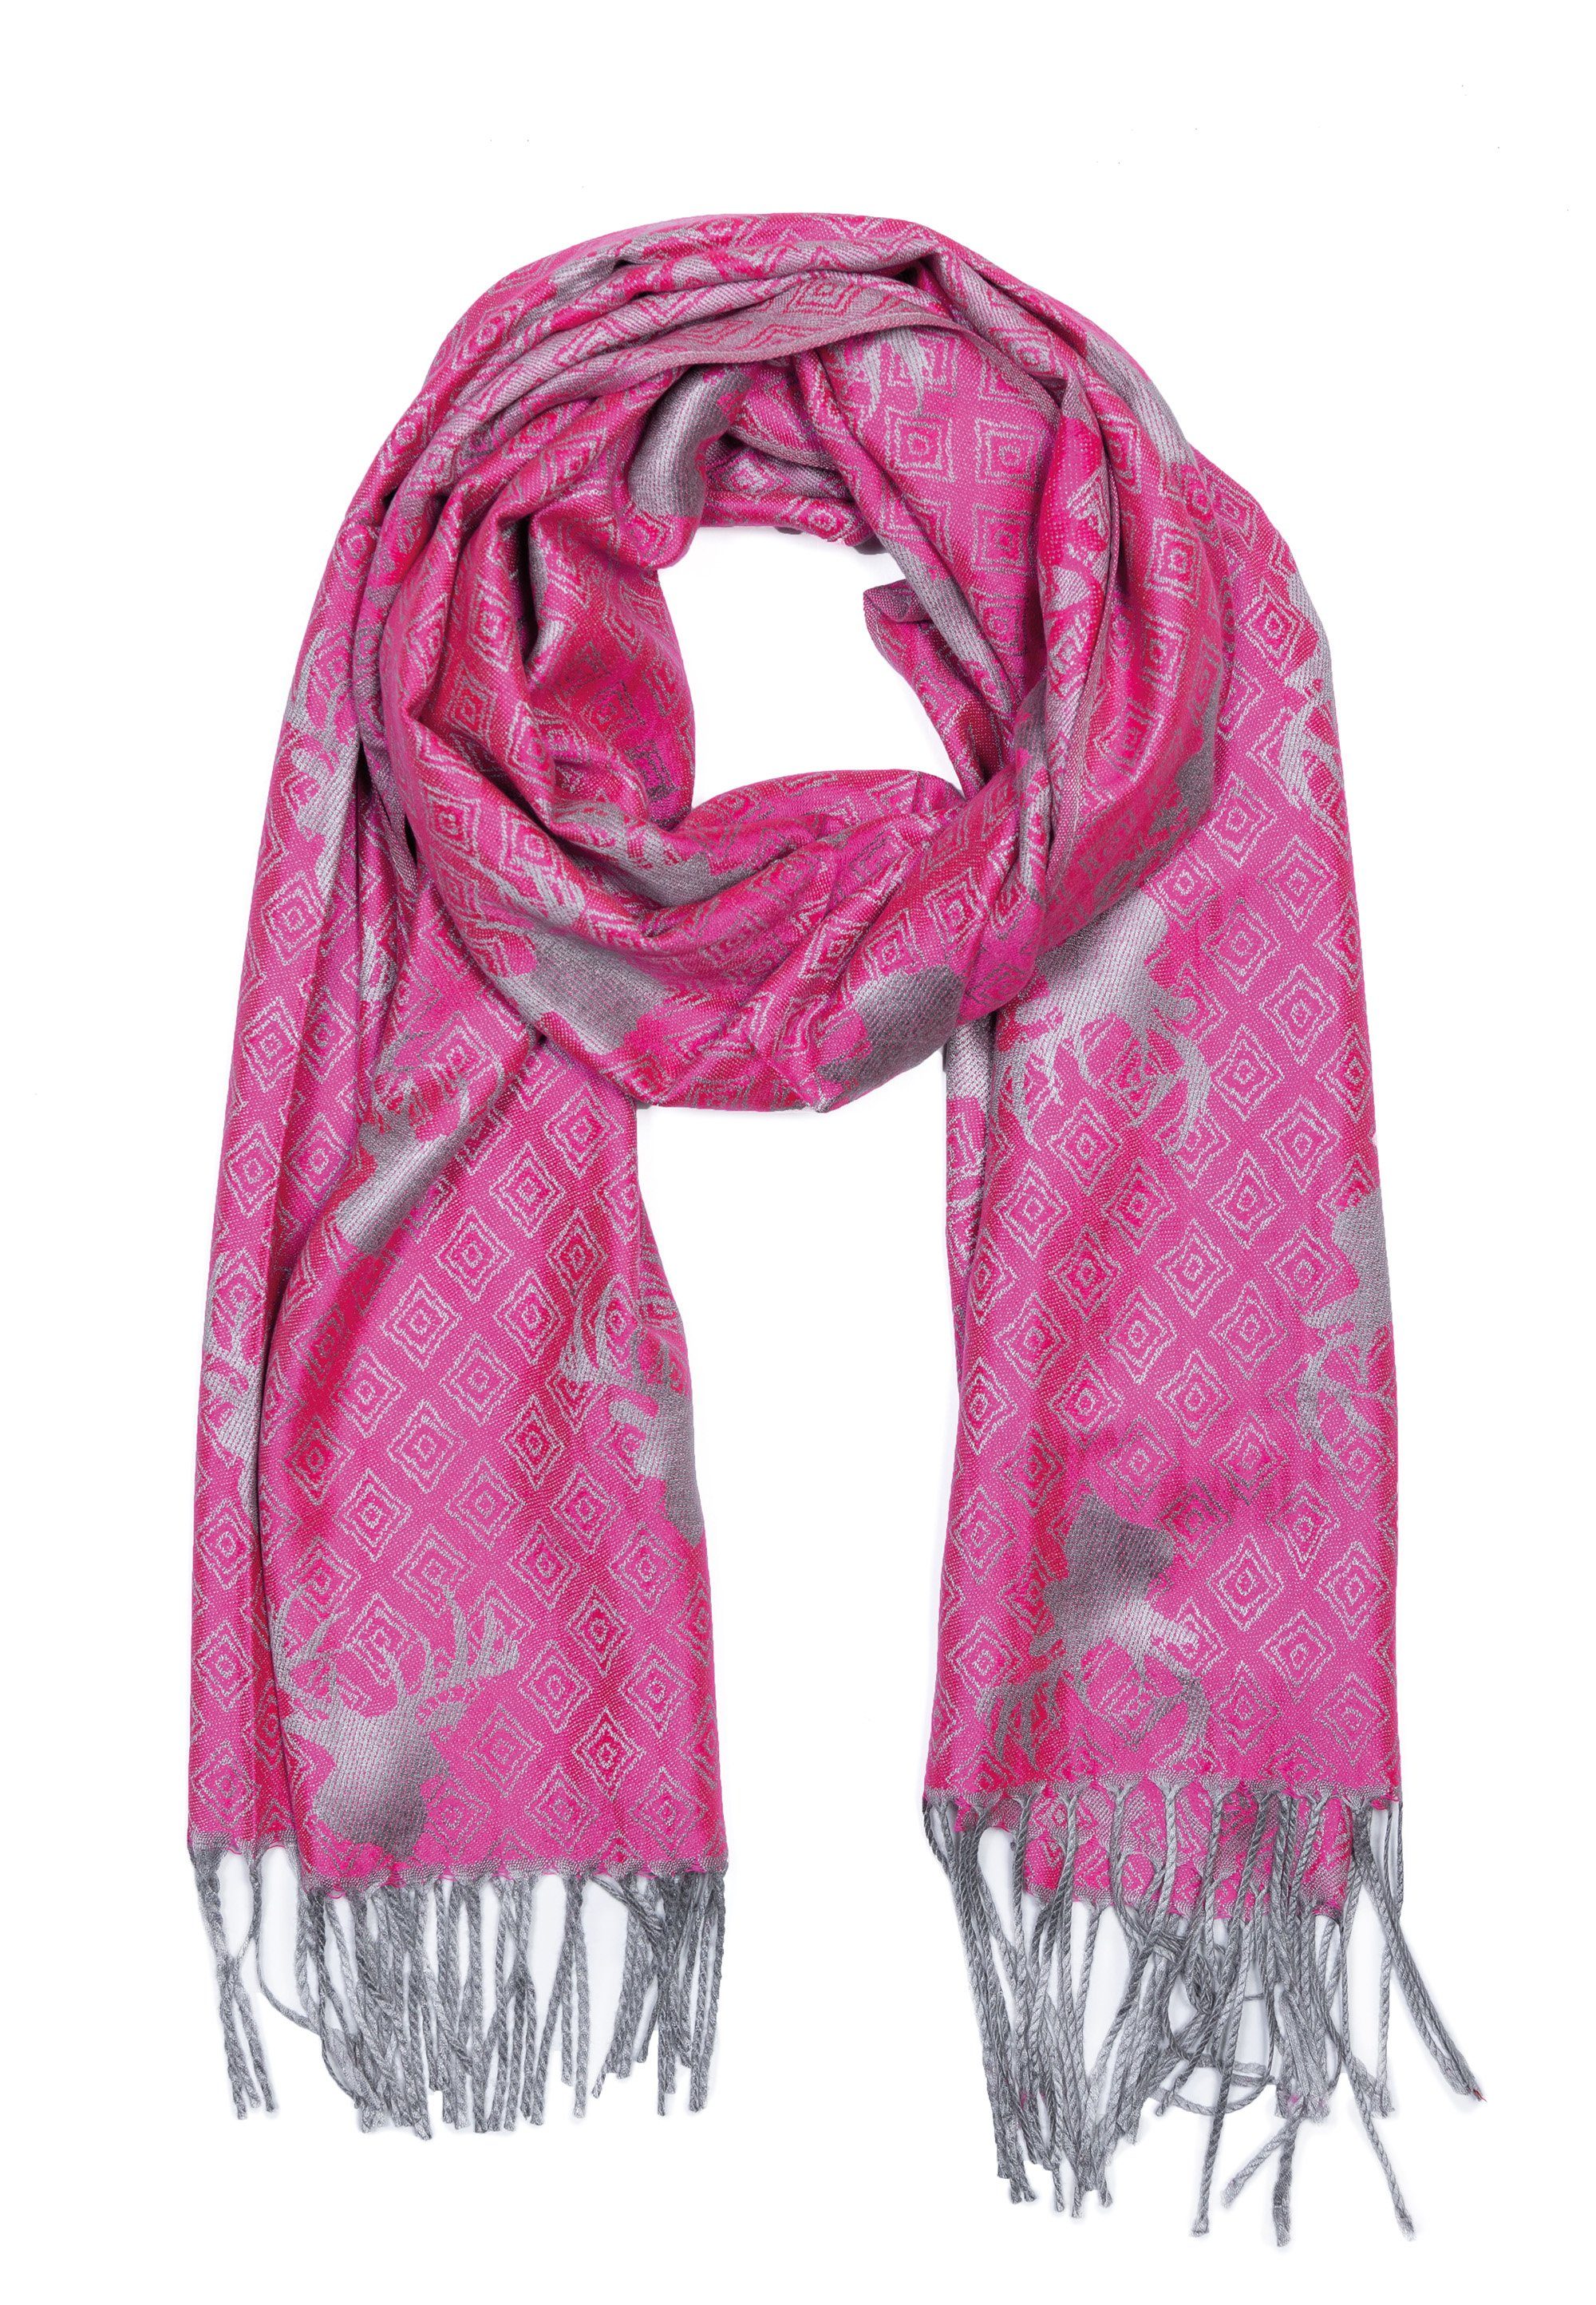 Goodman Verarbeitung Fransen, Modeschal Hirsch hochwertige mit Design Schal Pink sehr